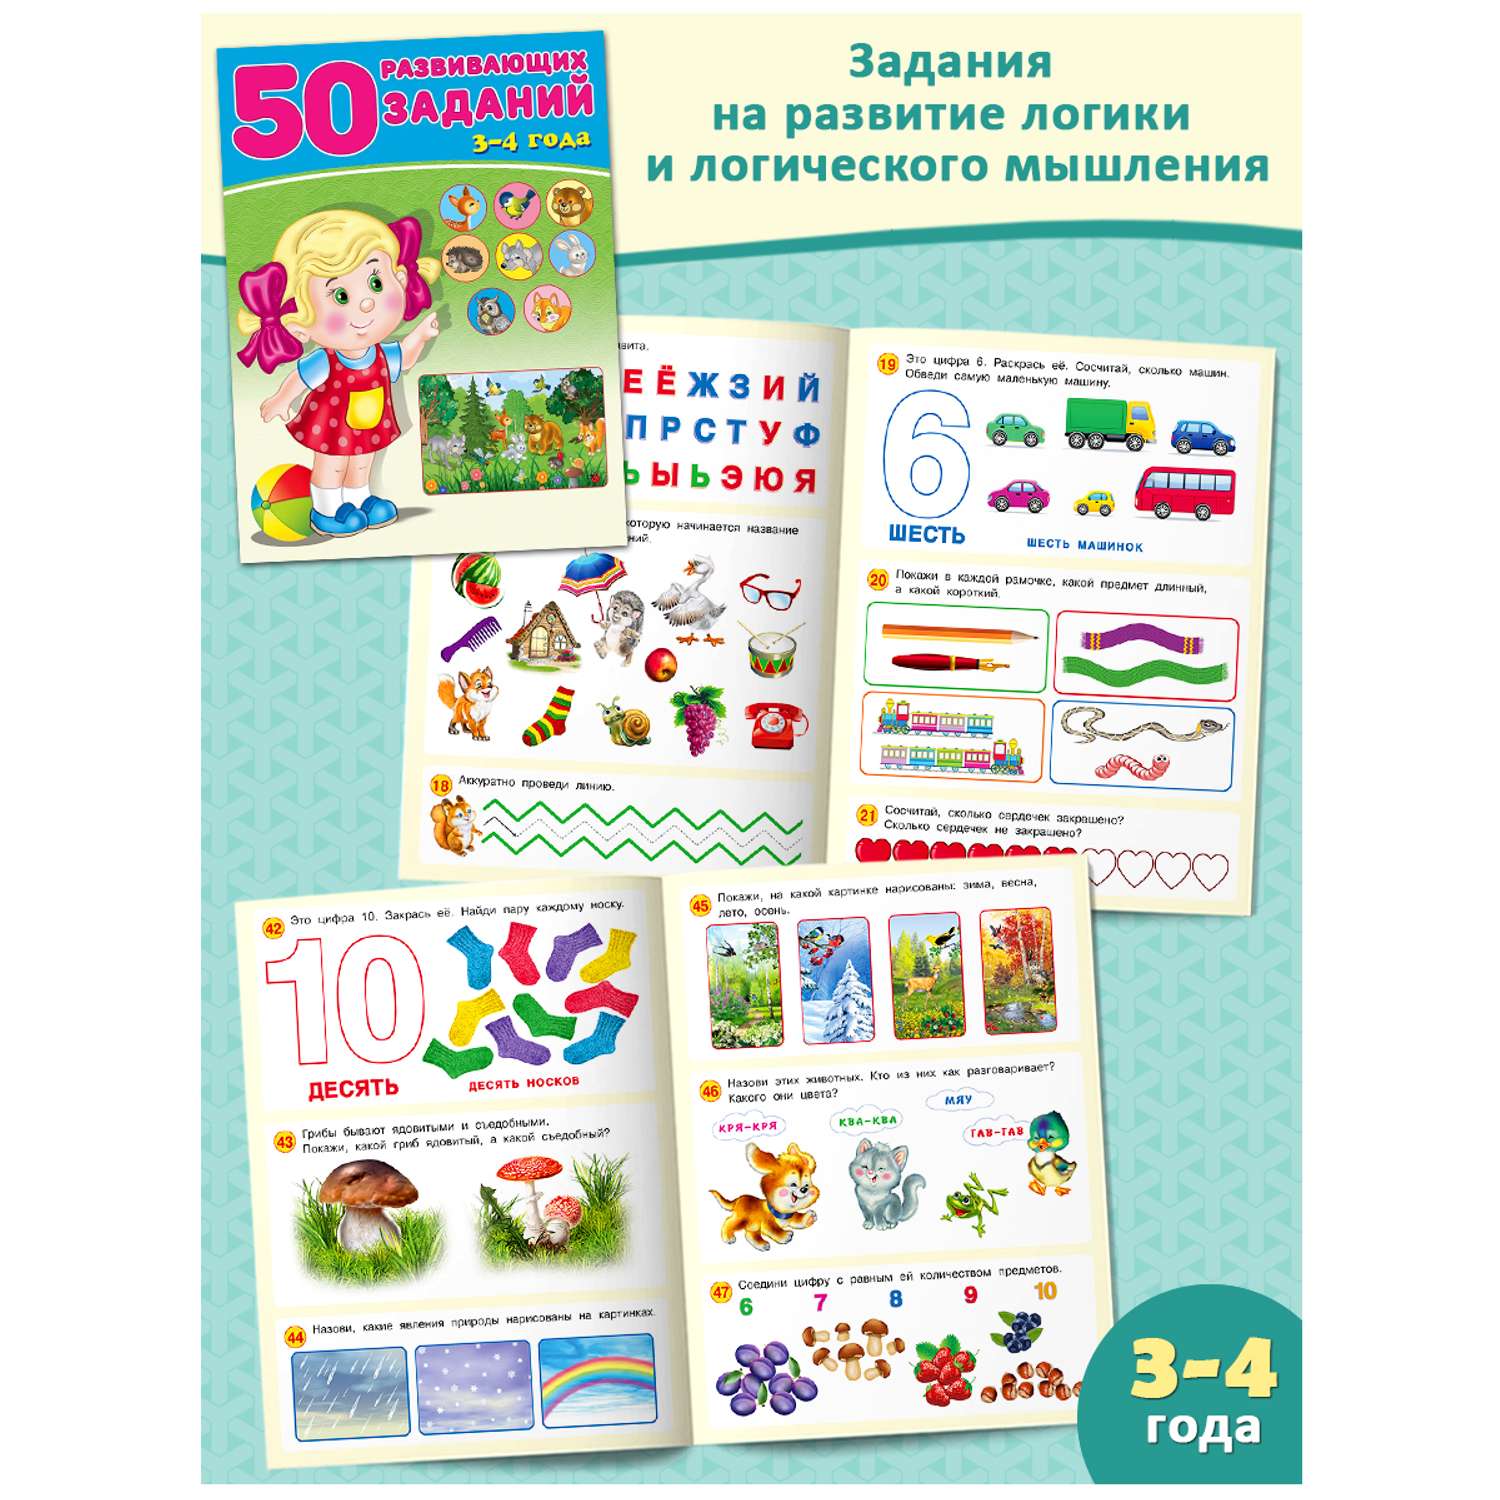 Набор из 3-х книг Фламинго Для детей развивающие Задания на развитие речи памяти внимания Подготовка к школе - фото 4